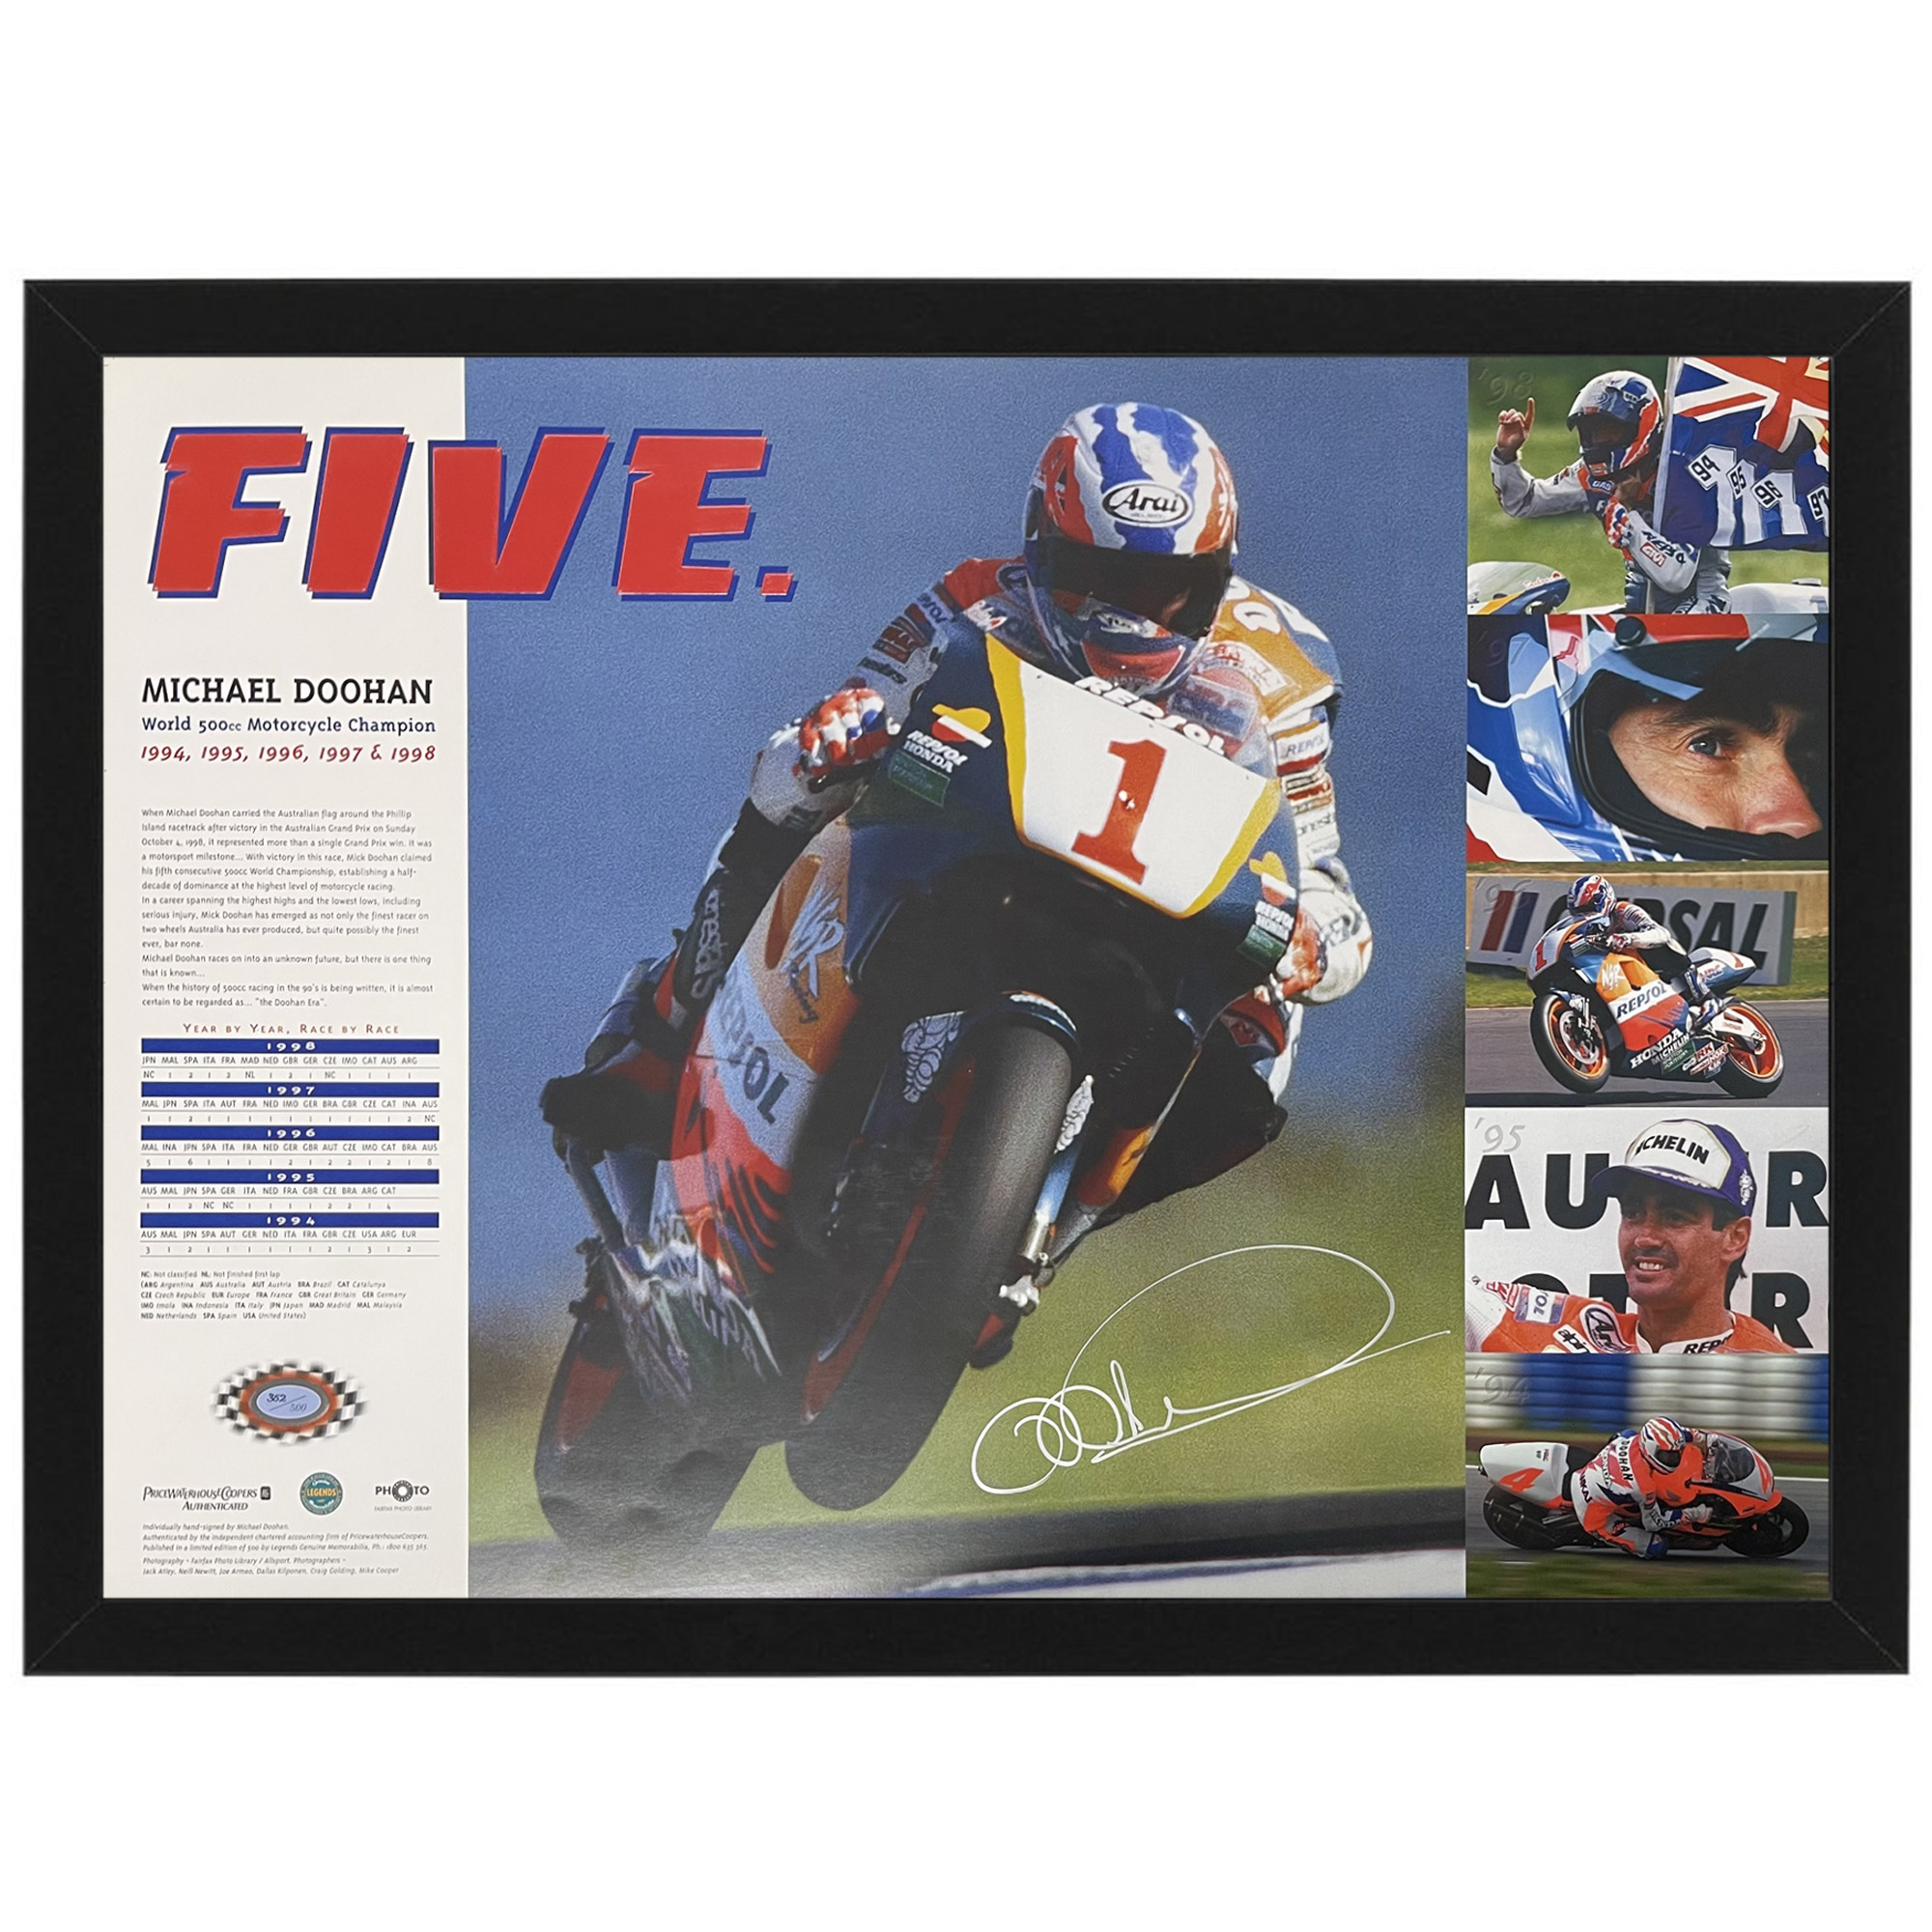 Motorsport – Moto GP – Michael Doohan “FIVE” S...